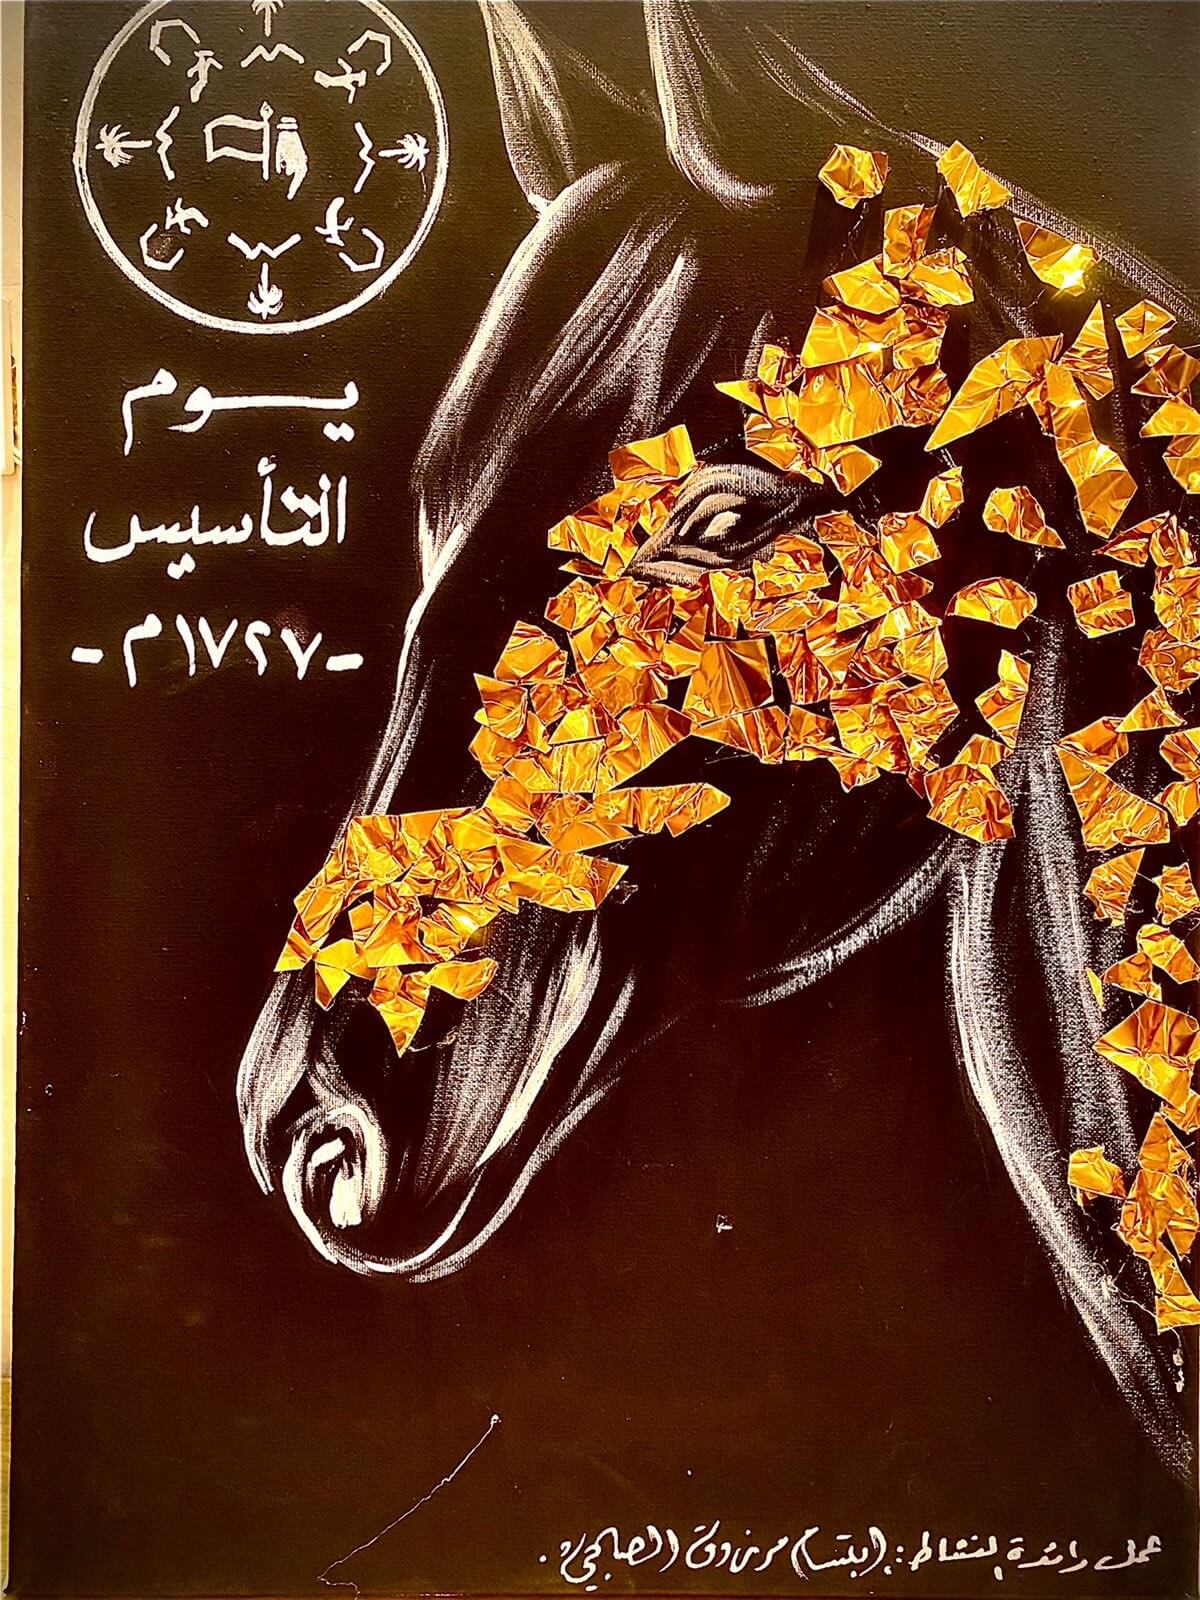 رسمه يوم التأسيس السعودي رائعة فيها حصان اصيل سعودي